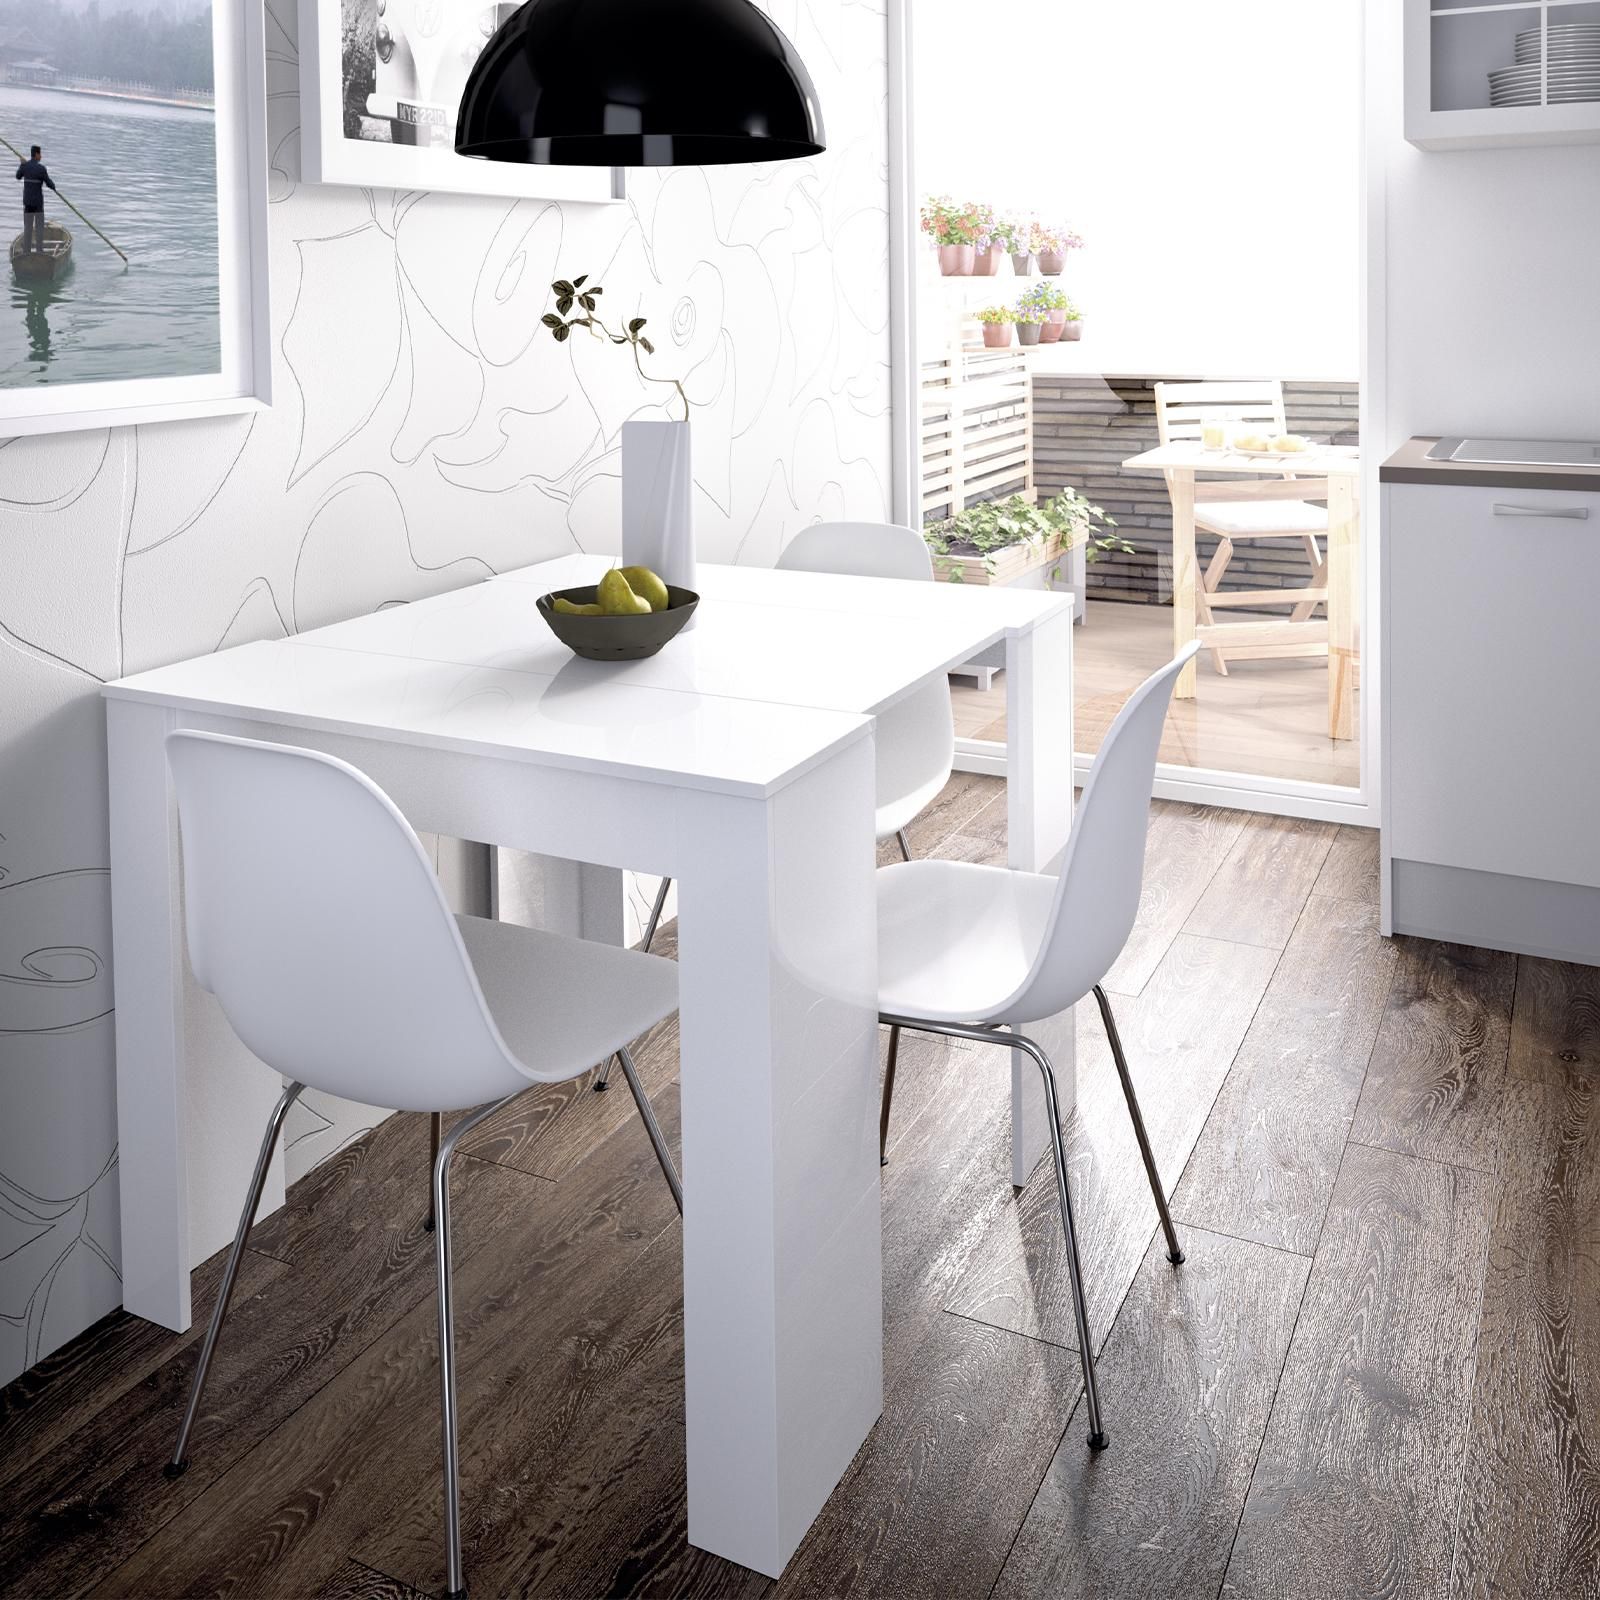 Dyon Basic tavolo cucina allungabile bianco lucido legno 90x137-185cm